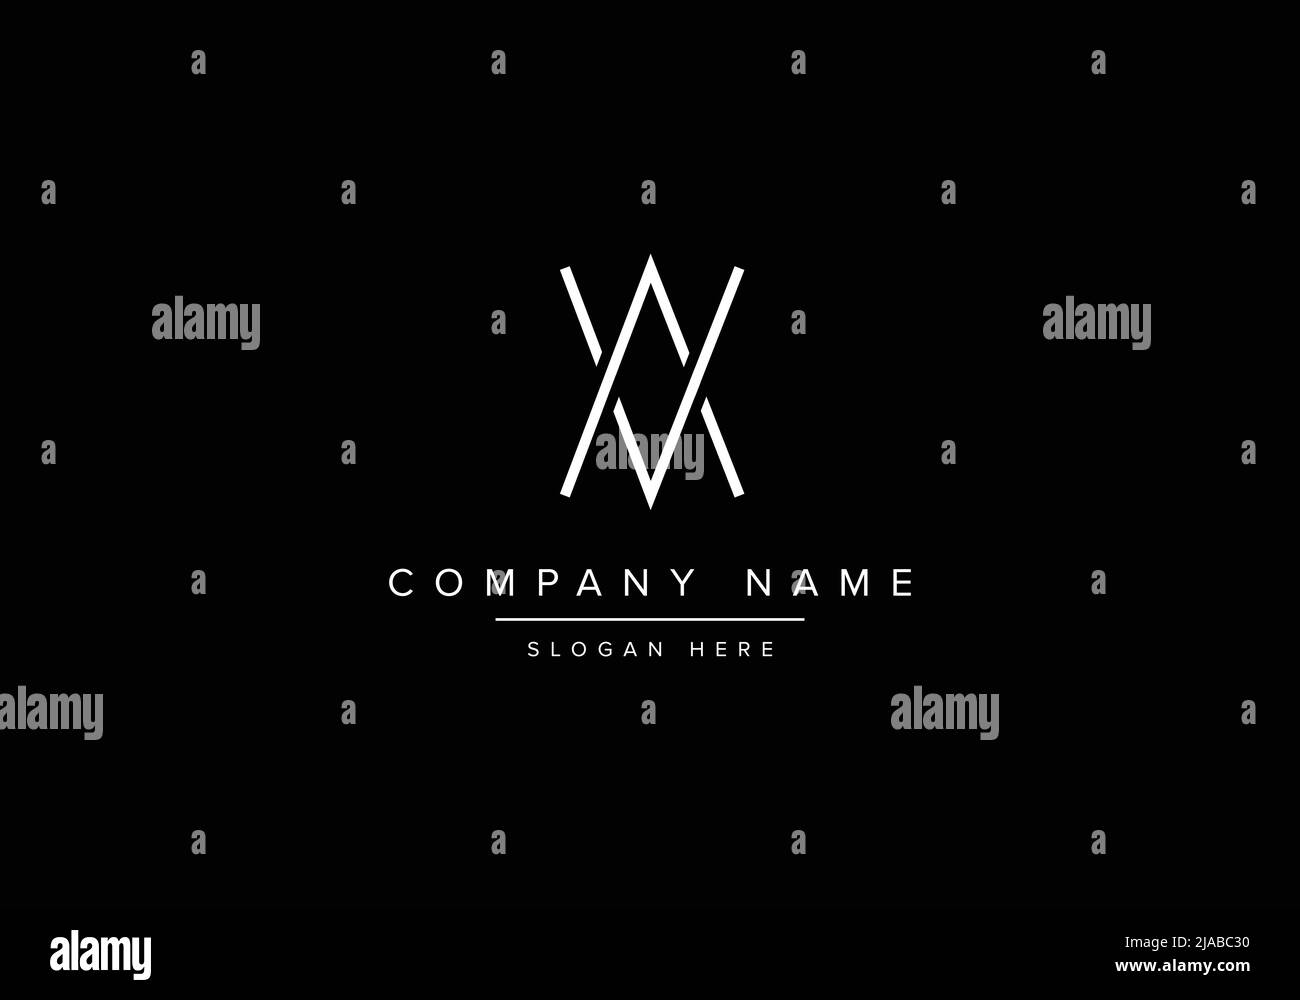 Alphabet AV logo design, Creative vector logo icon design concept for business or company identity Stock Vector